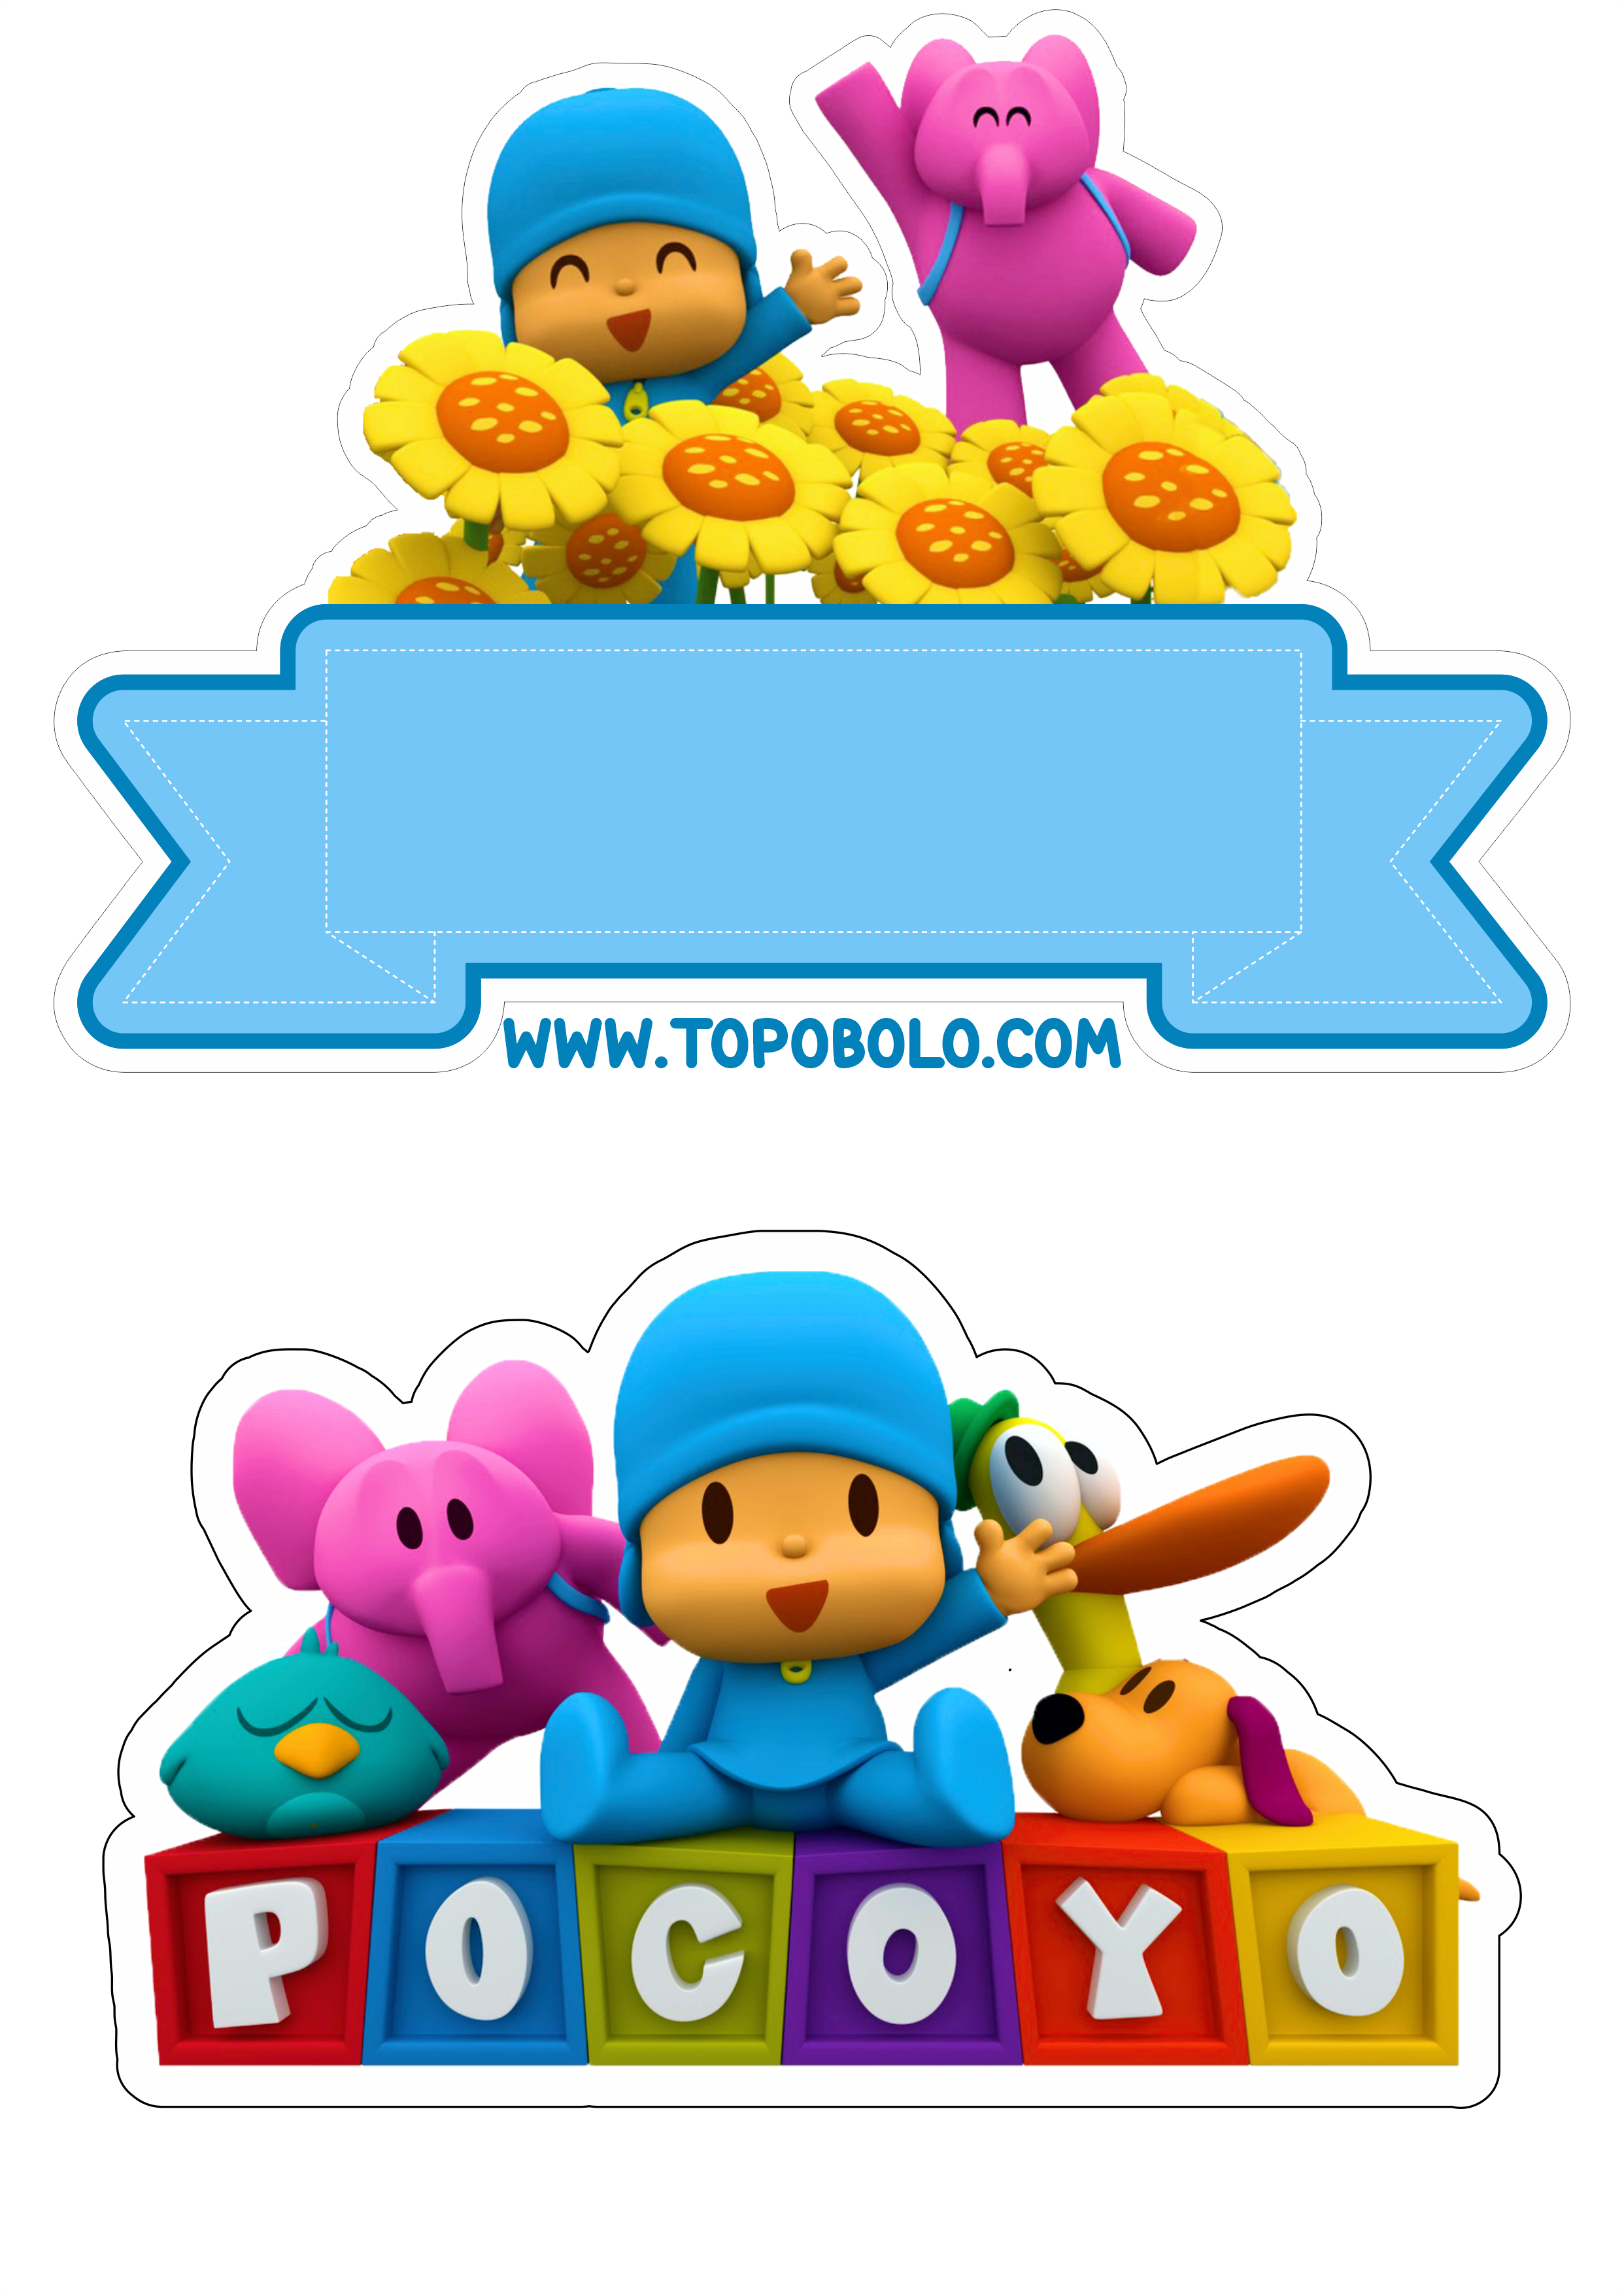 Topo de bolo Pocoyo festa de aniversário infantil decoração festa pronta arquivo para recorte artesanato png